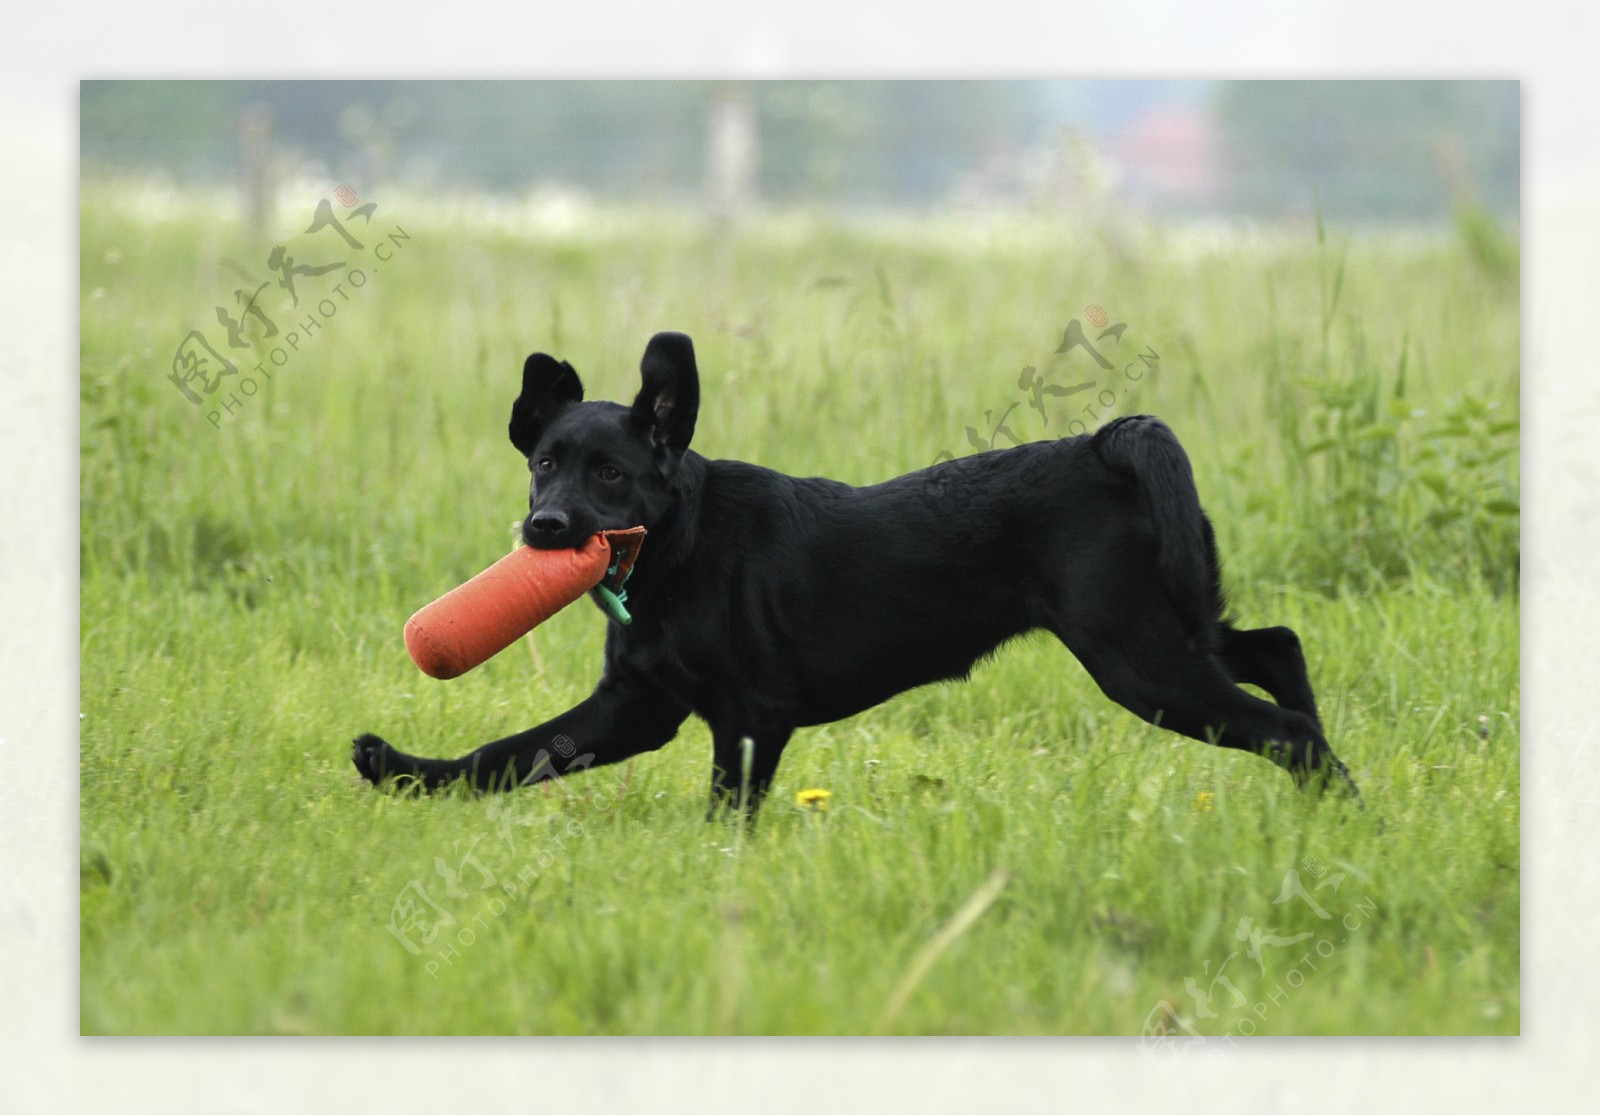 在草地上玩耍的黑狗